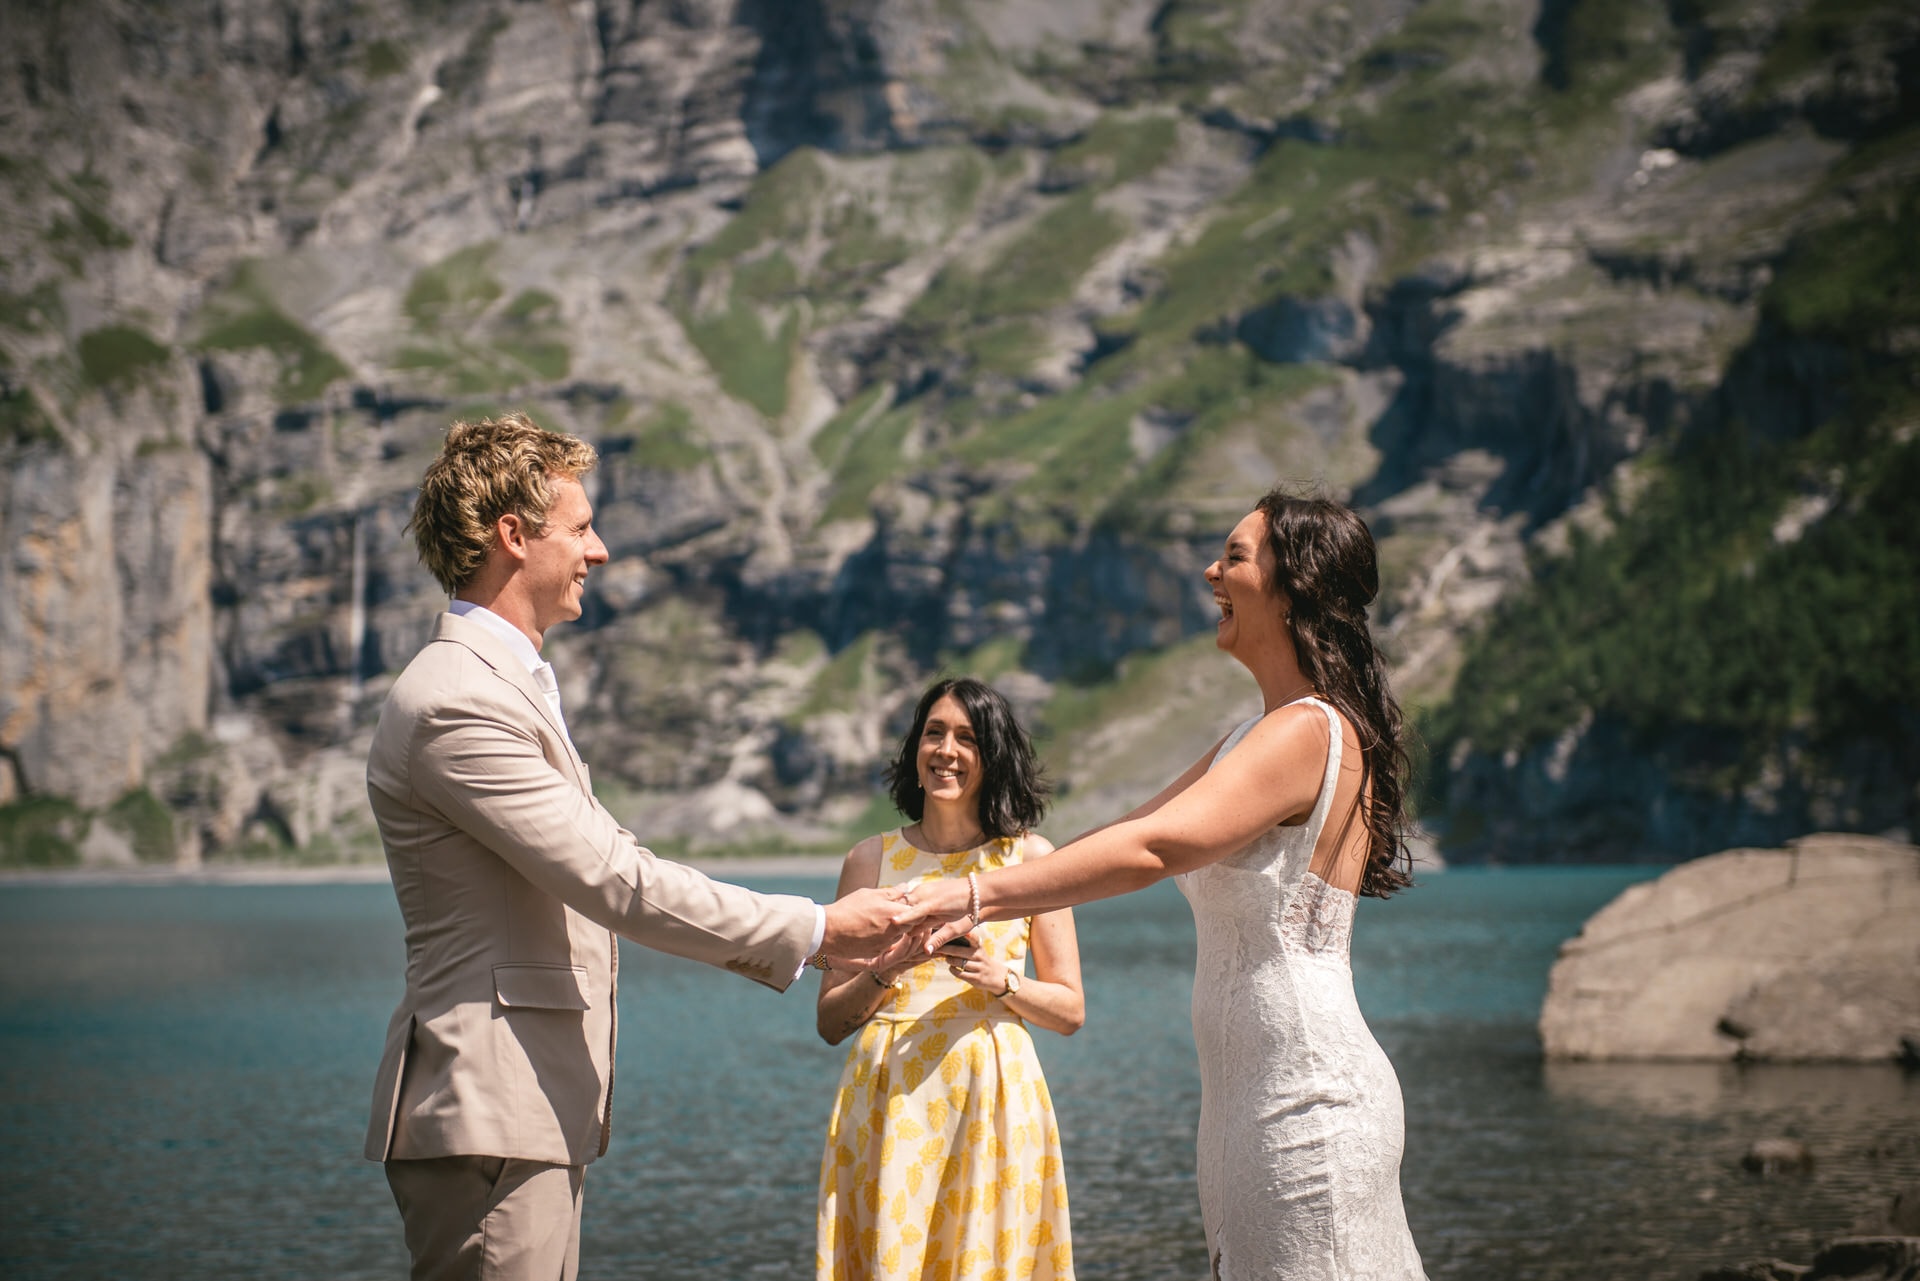 Trail of love through alpine splendor - Emily & Luke's hiking elopement.